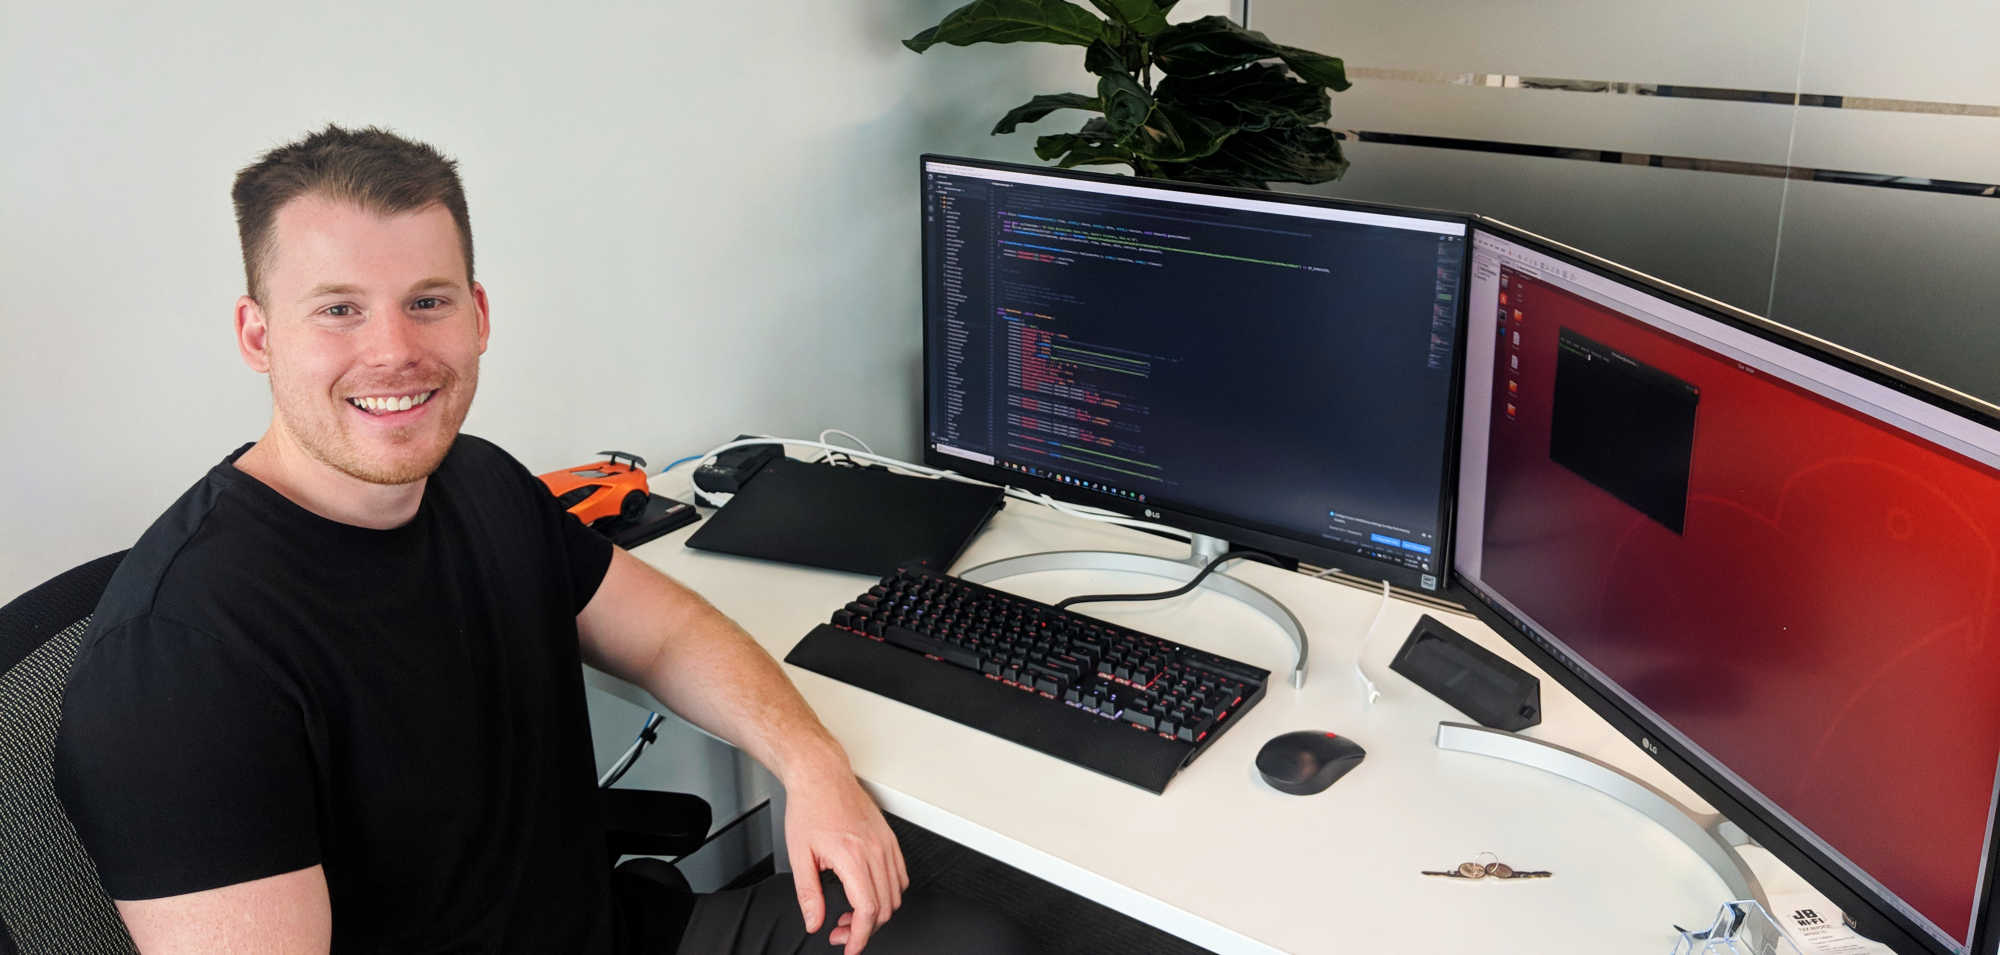 Conheça o chefe de desenvolvimento do Litecoin – Adrian Gallagher